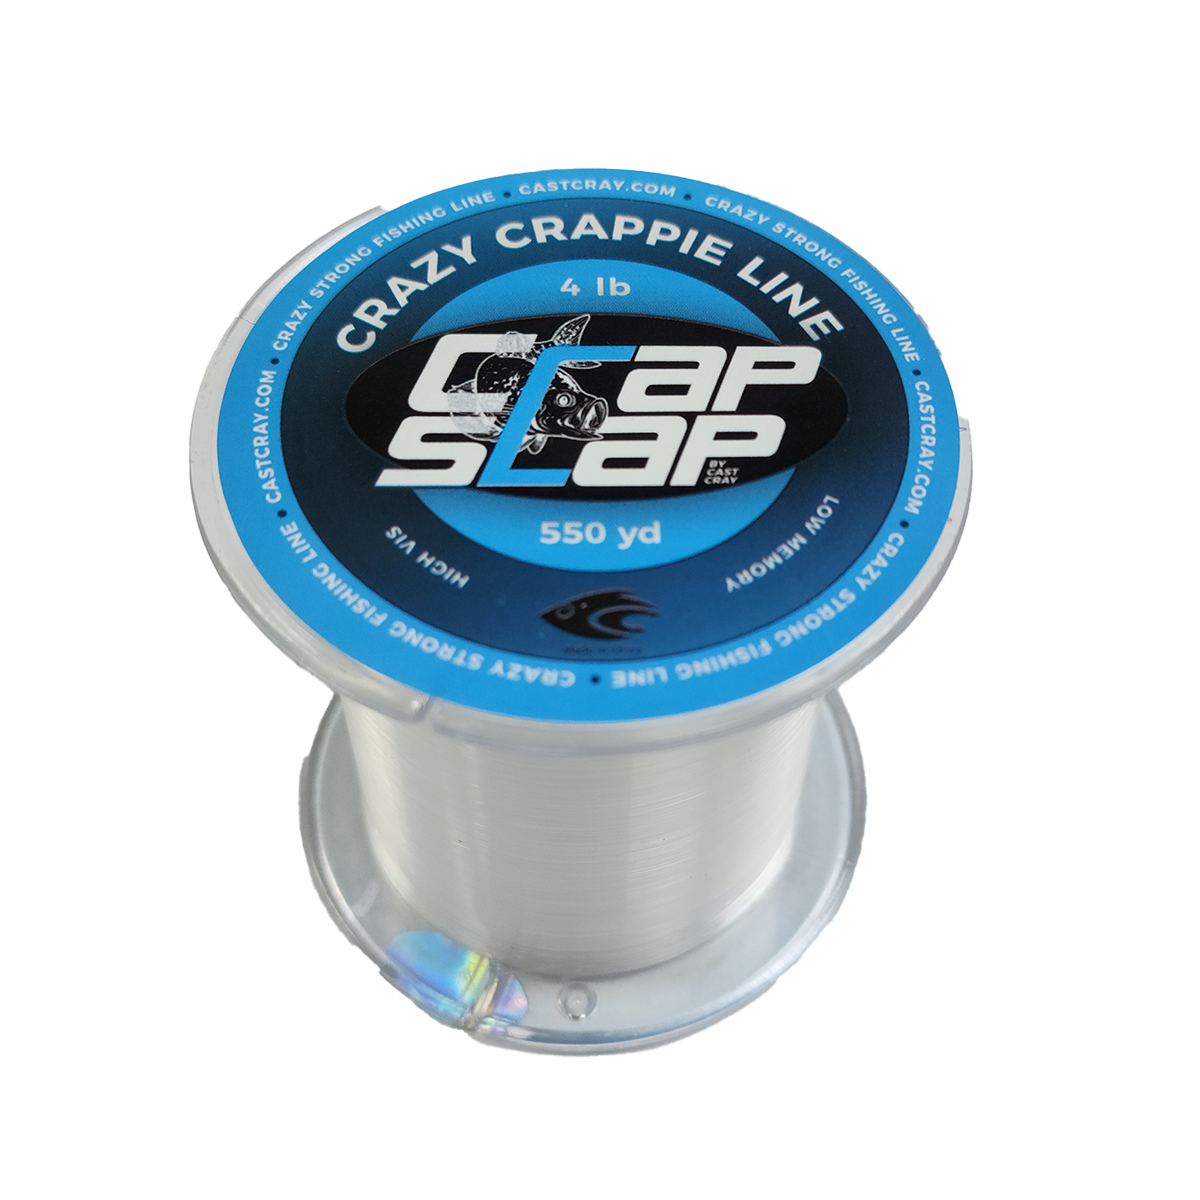 Crap Slap - Crazy Crappie Line - Clear 4lb